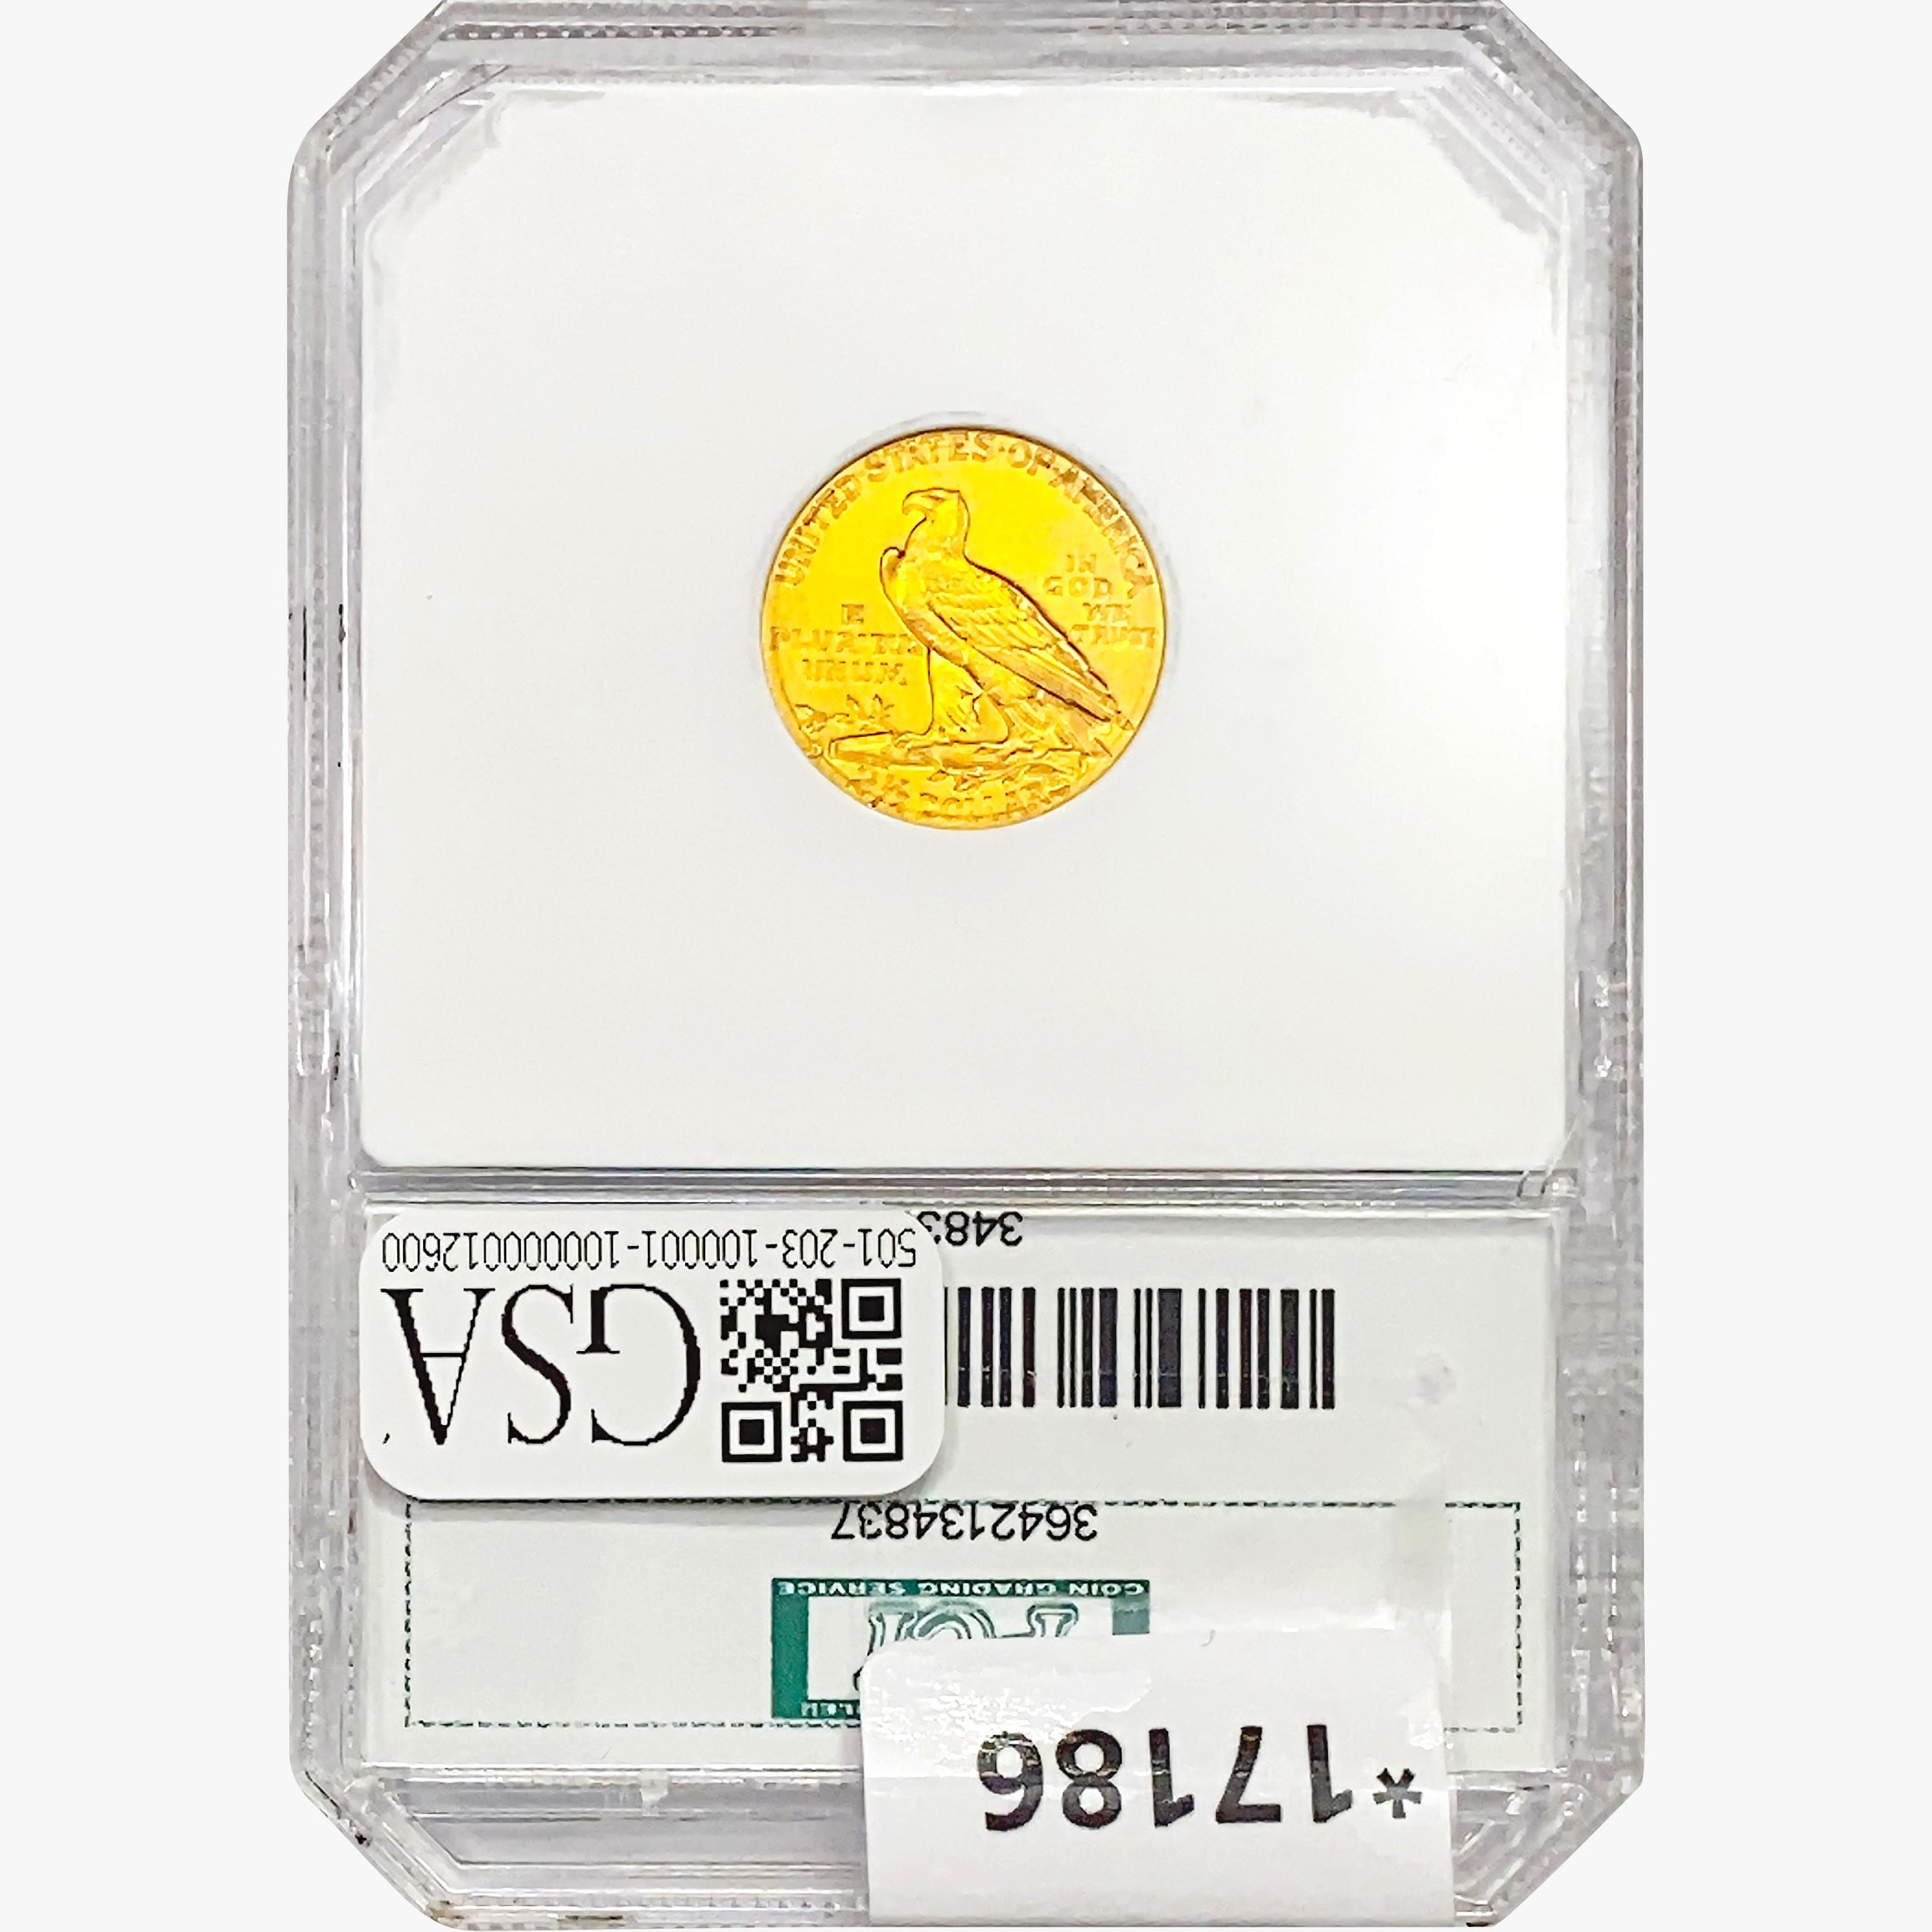 1914-D $2.50 Gold Quarter Eagle PCI MS64